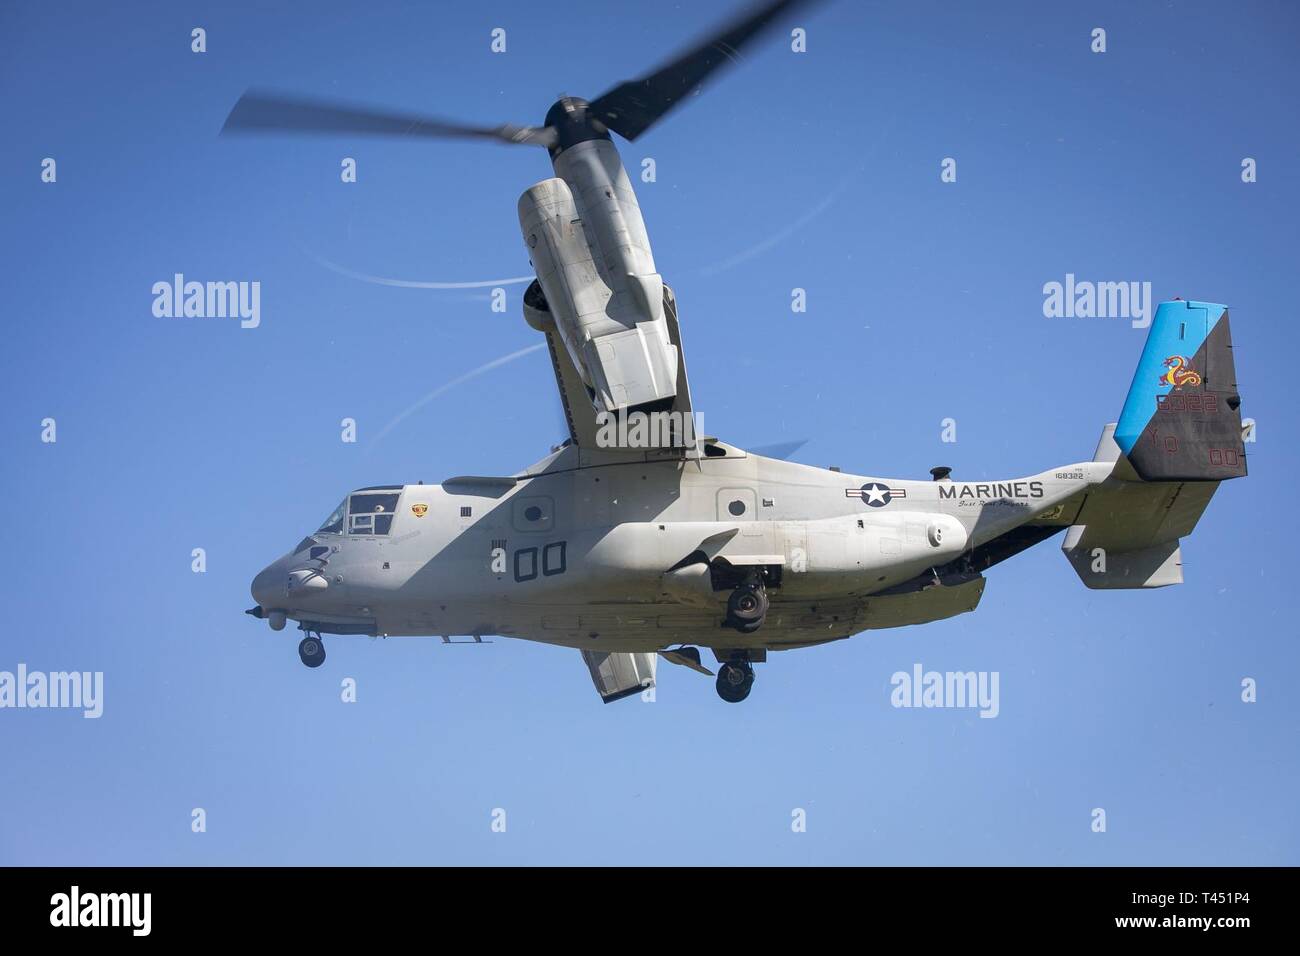 Une MV-22B hélicoptère à rotors basculants Osprey affectés à l'escadron 268 à rotors basculants moyen marin survole pendant un aéronef tombé scénario à la zone d'atterrissage 216 Base du Corps des Marines, Hawaii, le 27 février, 2019. Les Marines américains avec des armes Company, 2e Bataillon, 3e Régiment de Marines et VMM-268 avec le A-10 Thunderbolt attaque aéronefs affectés au 442e Escadre de chasse de Whiteman Air Force Base, Ohio conduite formation composé d'un recouvrement tactique simulé d'aéronefs et un scénario du personnel de recherche et sauvetage de combat scénario. Banque D'Images